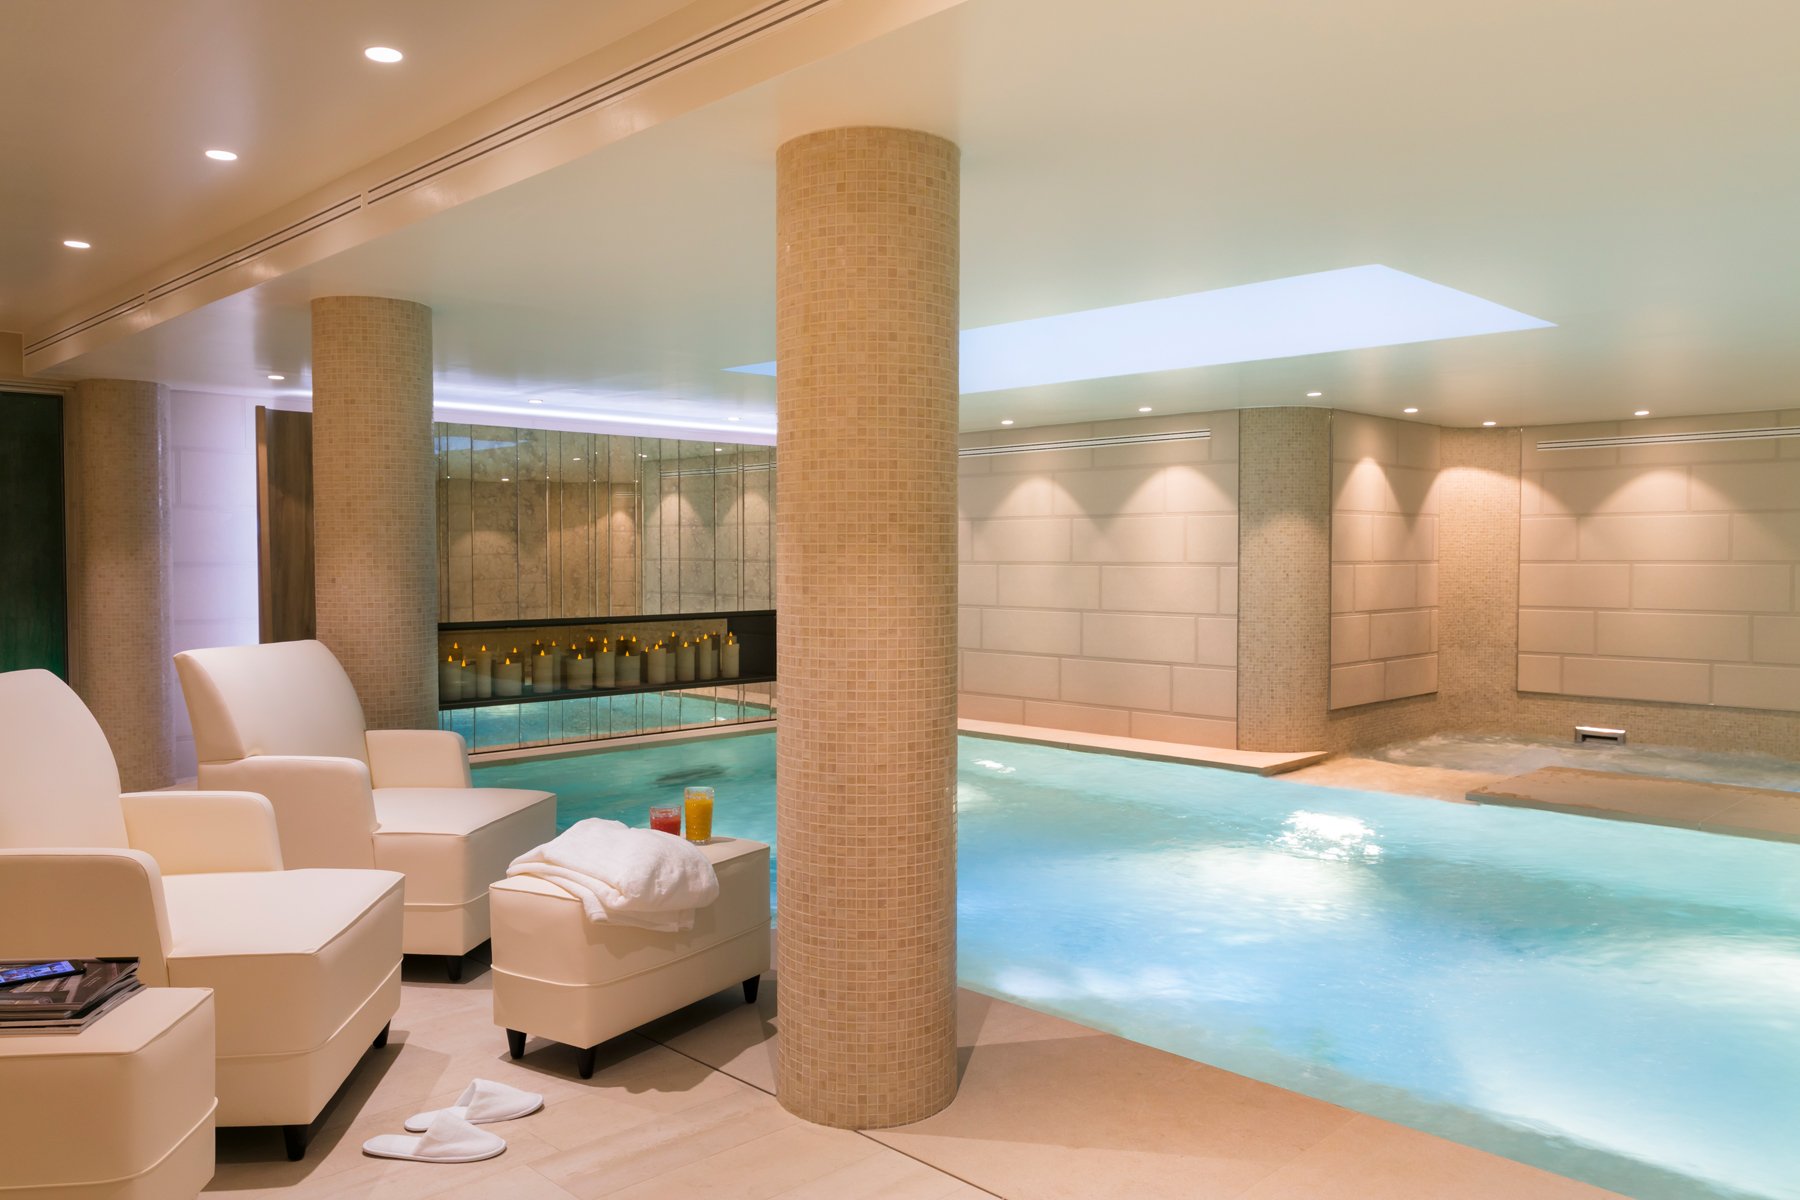 Maison Albar Hotels piscine intérieure spa